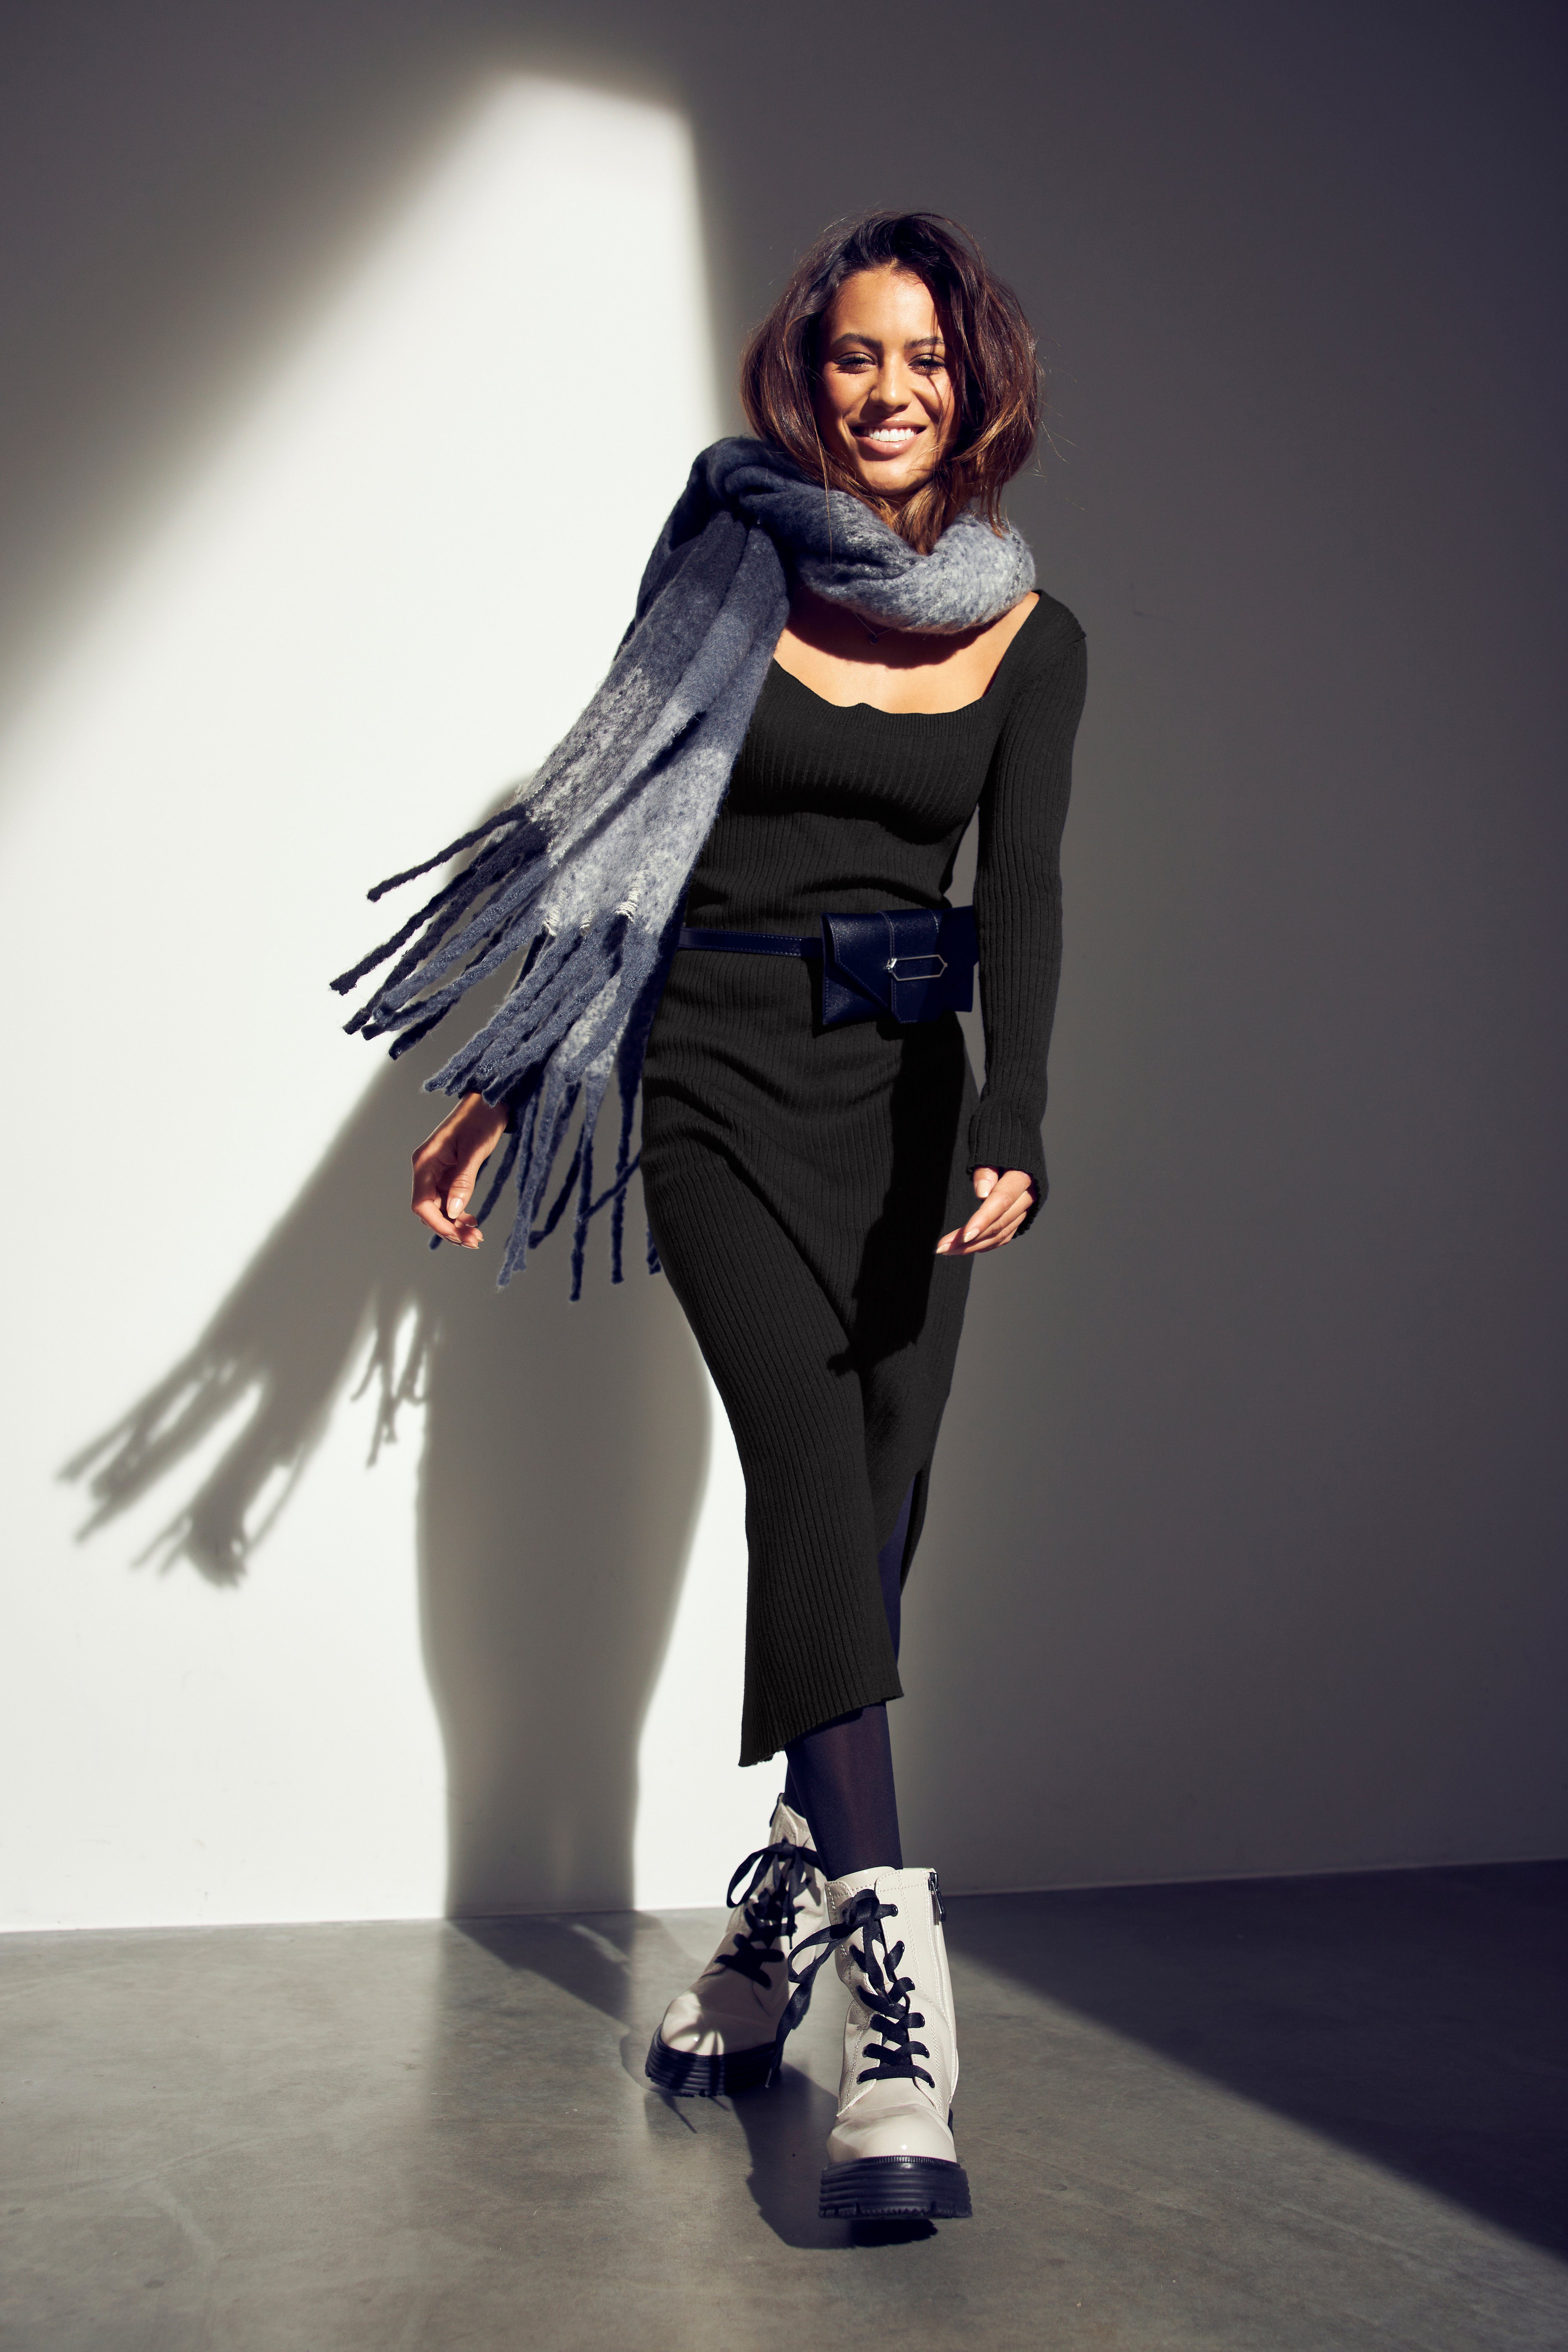 Tamaris Strickkleid trendy mit Karree-Ausschnitt schwarz